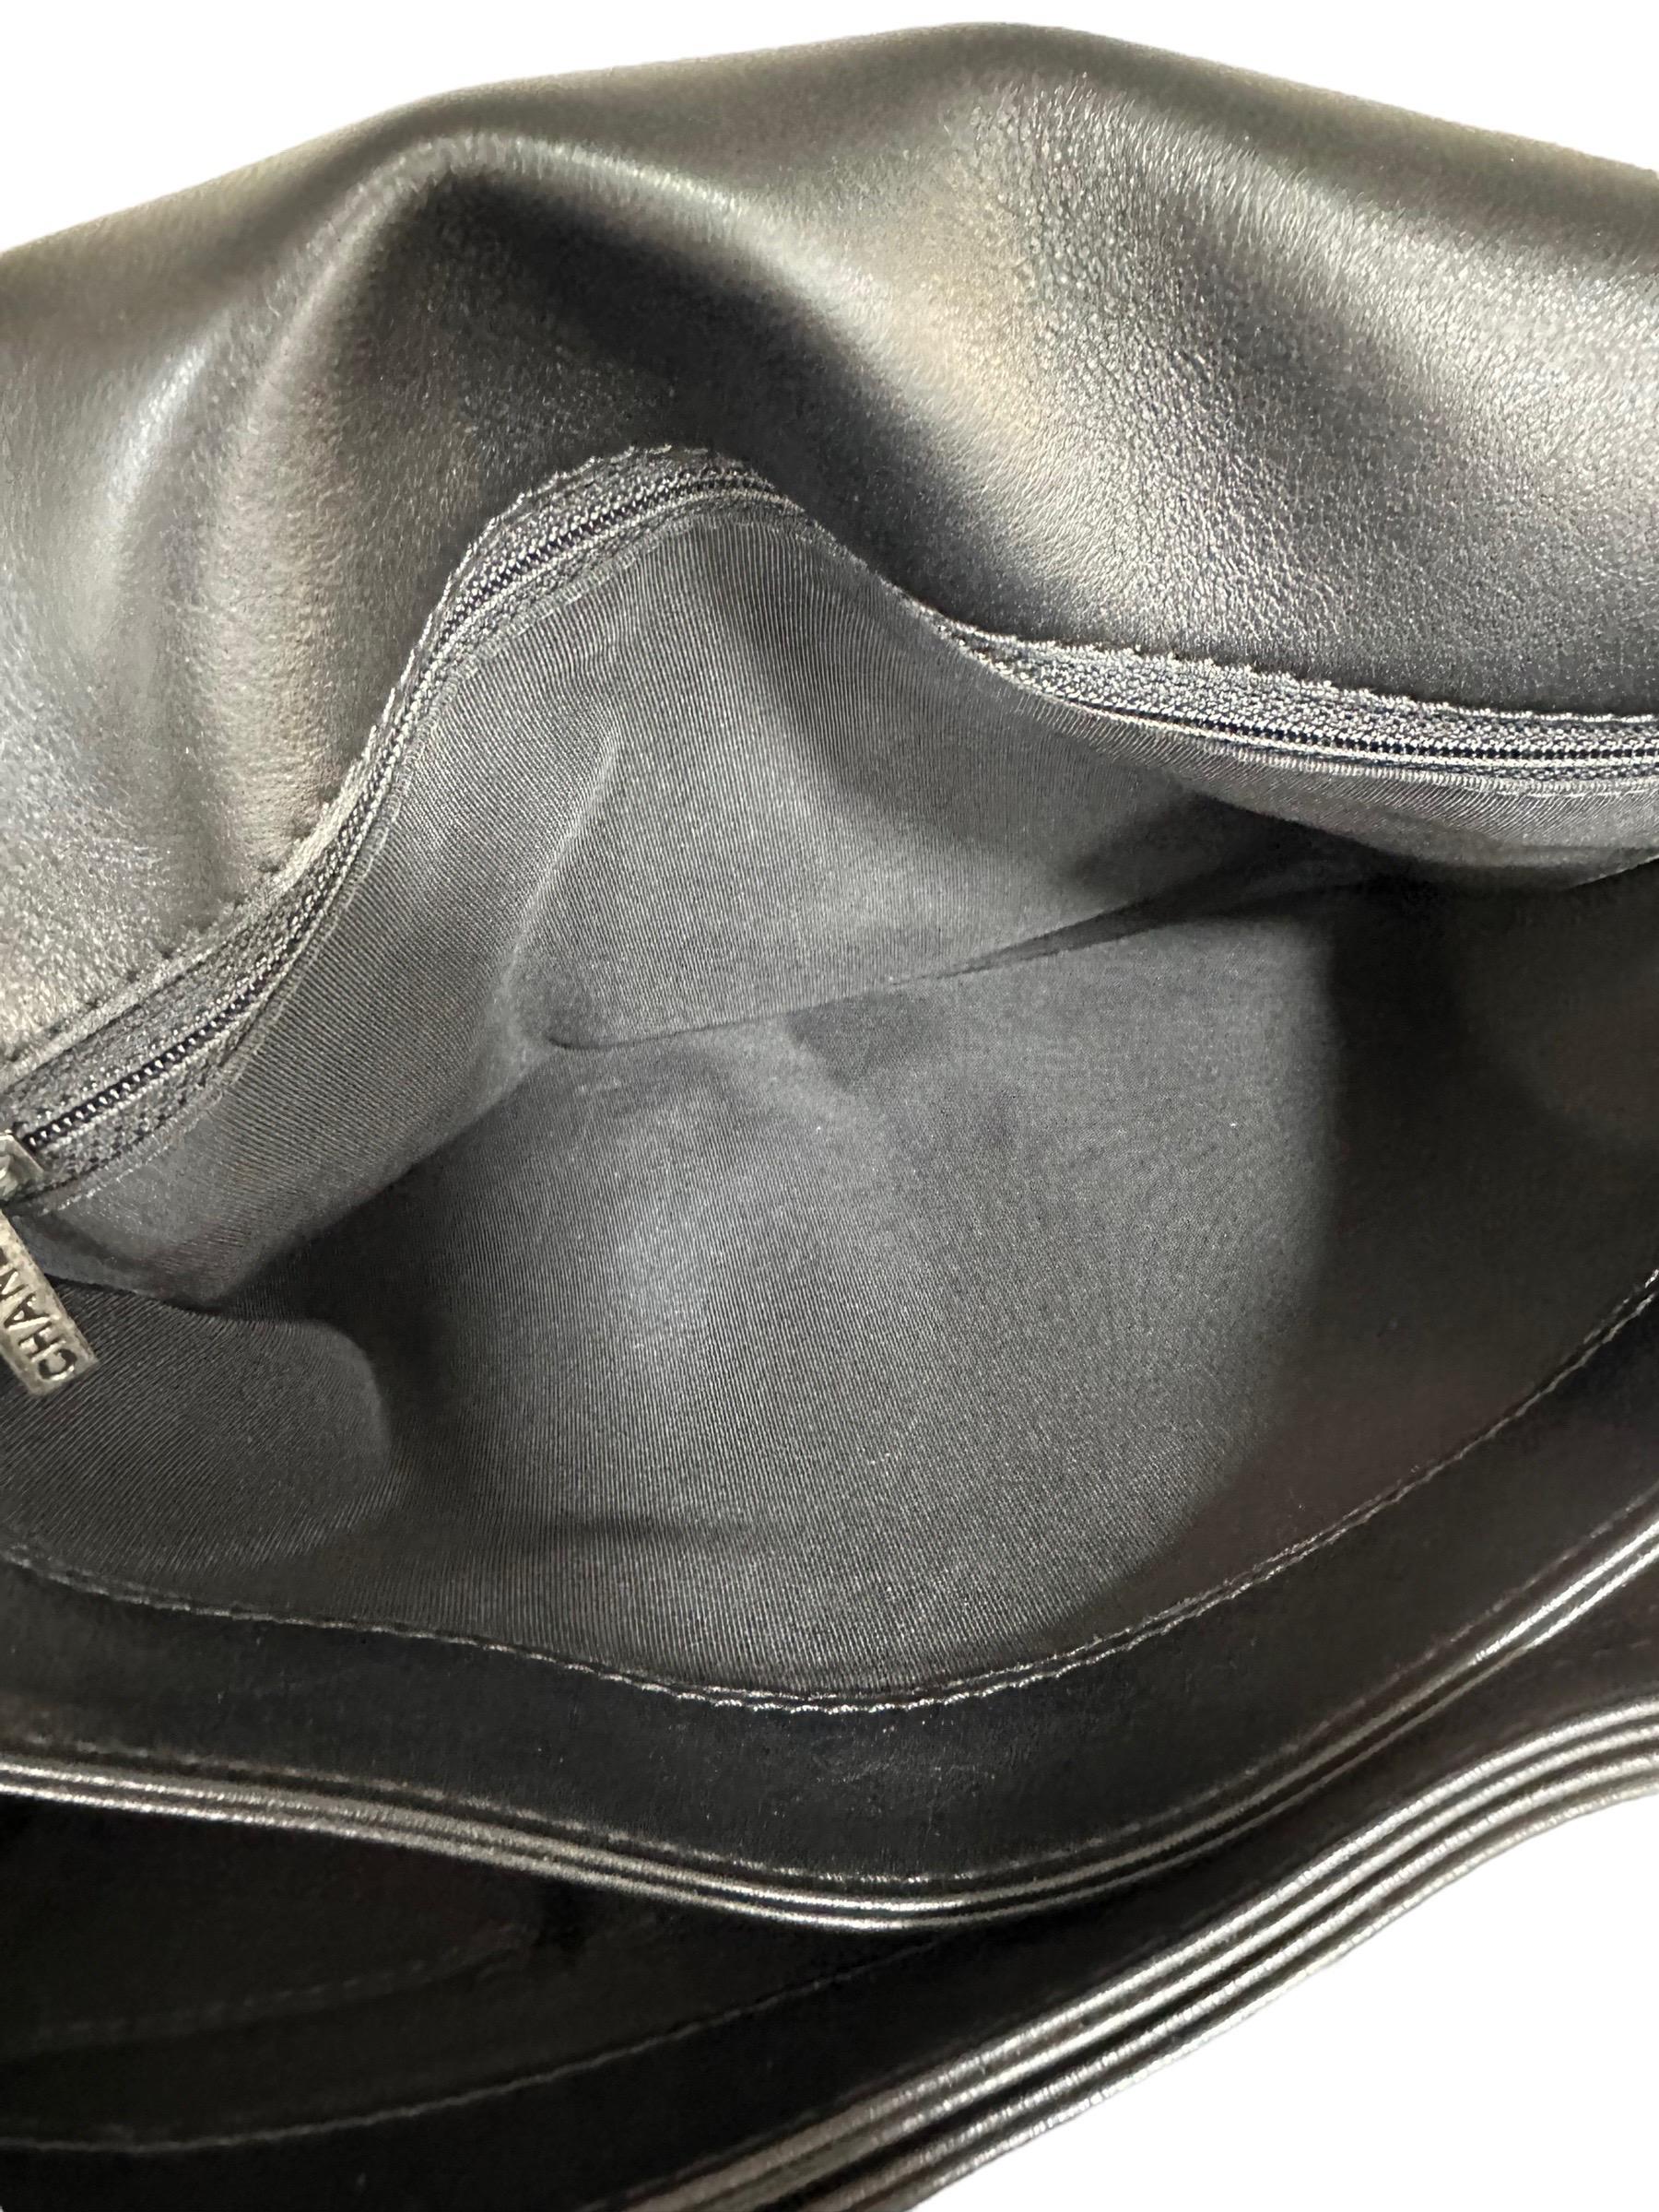 2014 Chanel Boy XL Limited Edition Shoulder Bag Multi Chains 9